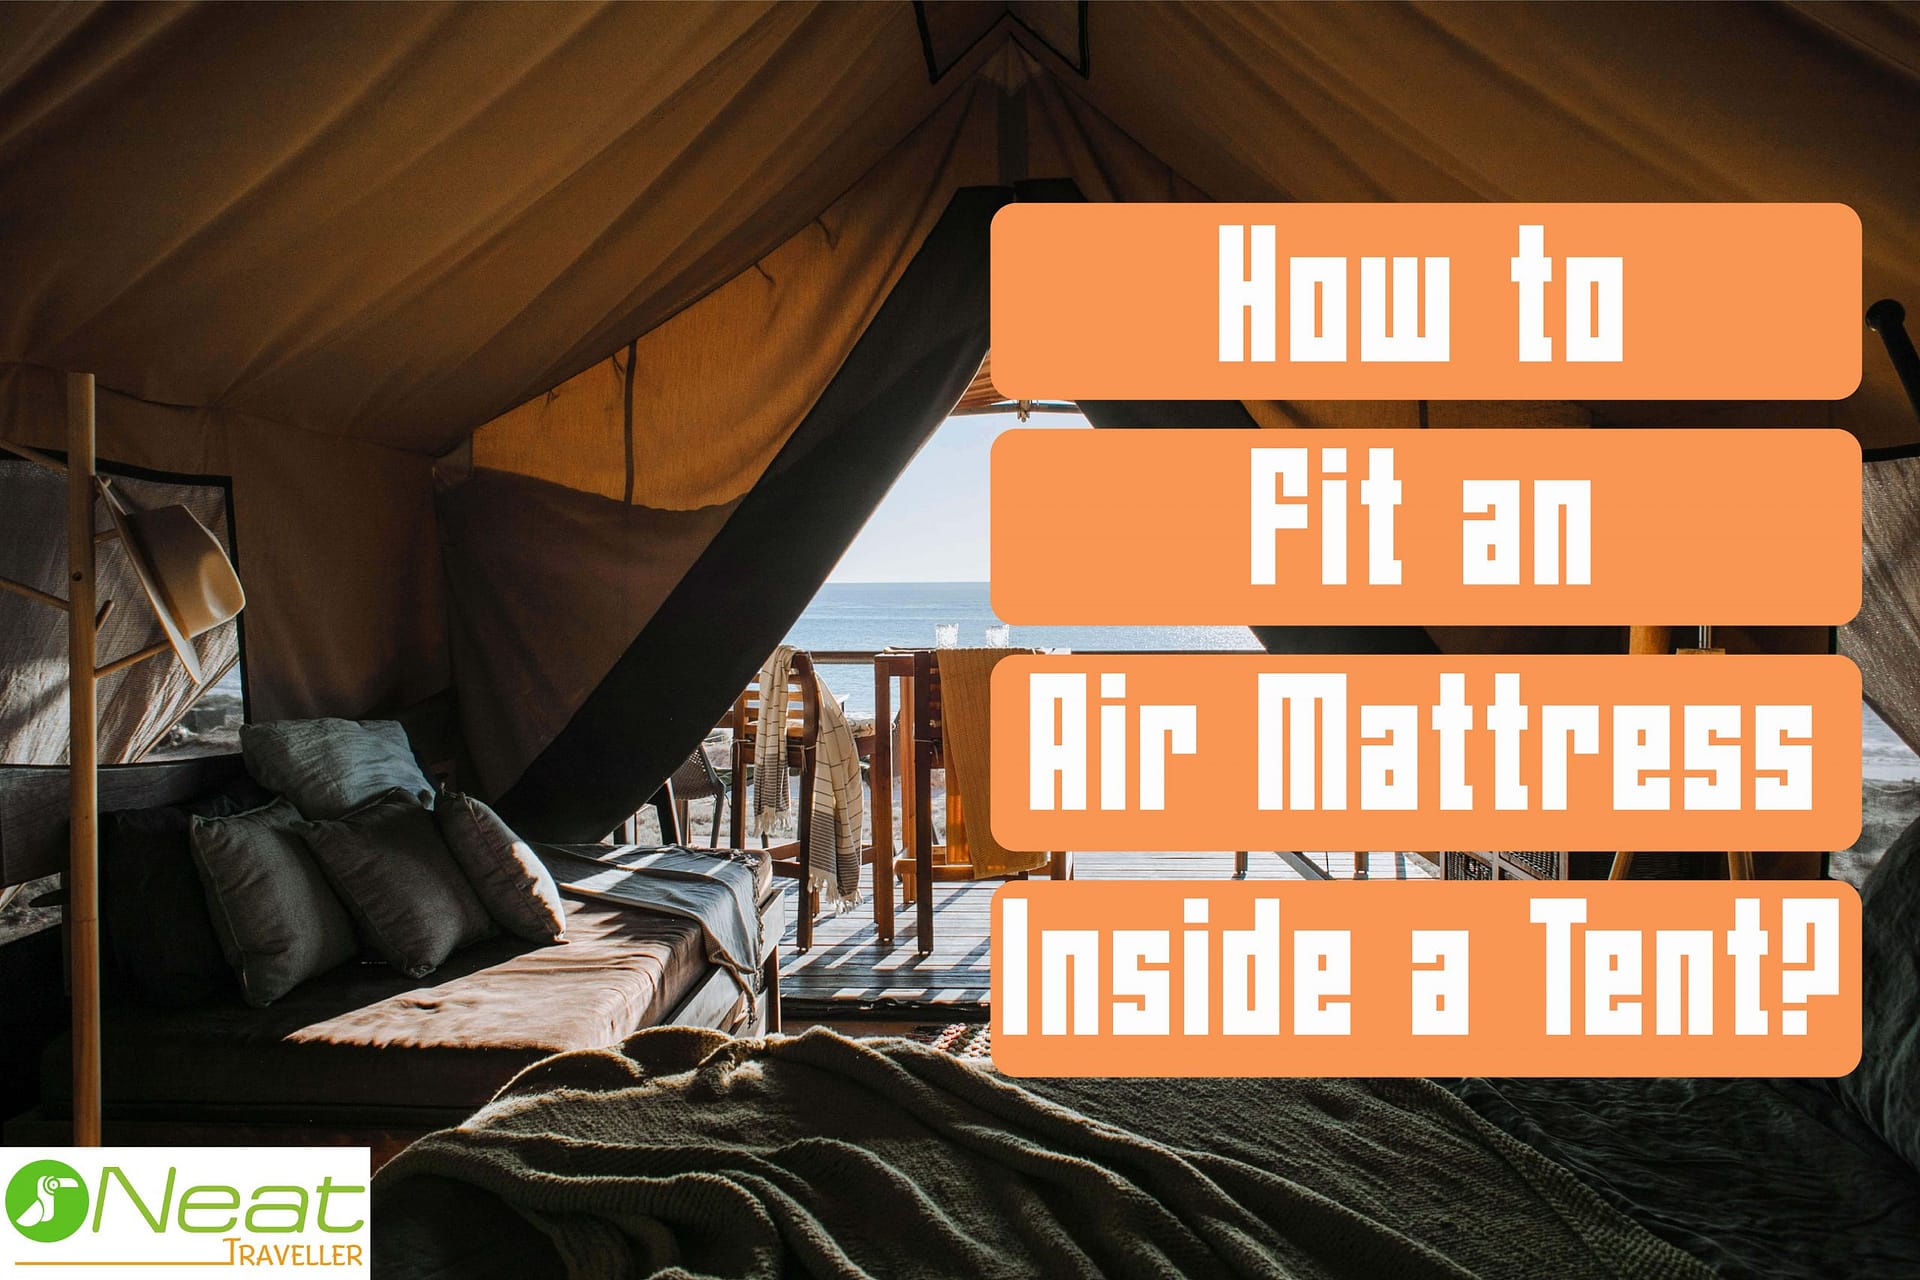 How to Fit an Air Mattress Inside a Tent? - Neat Traveller